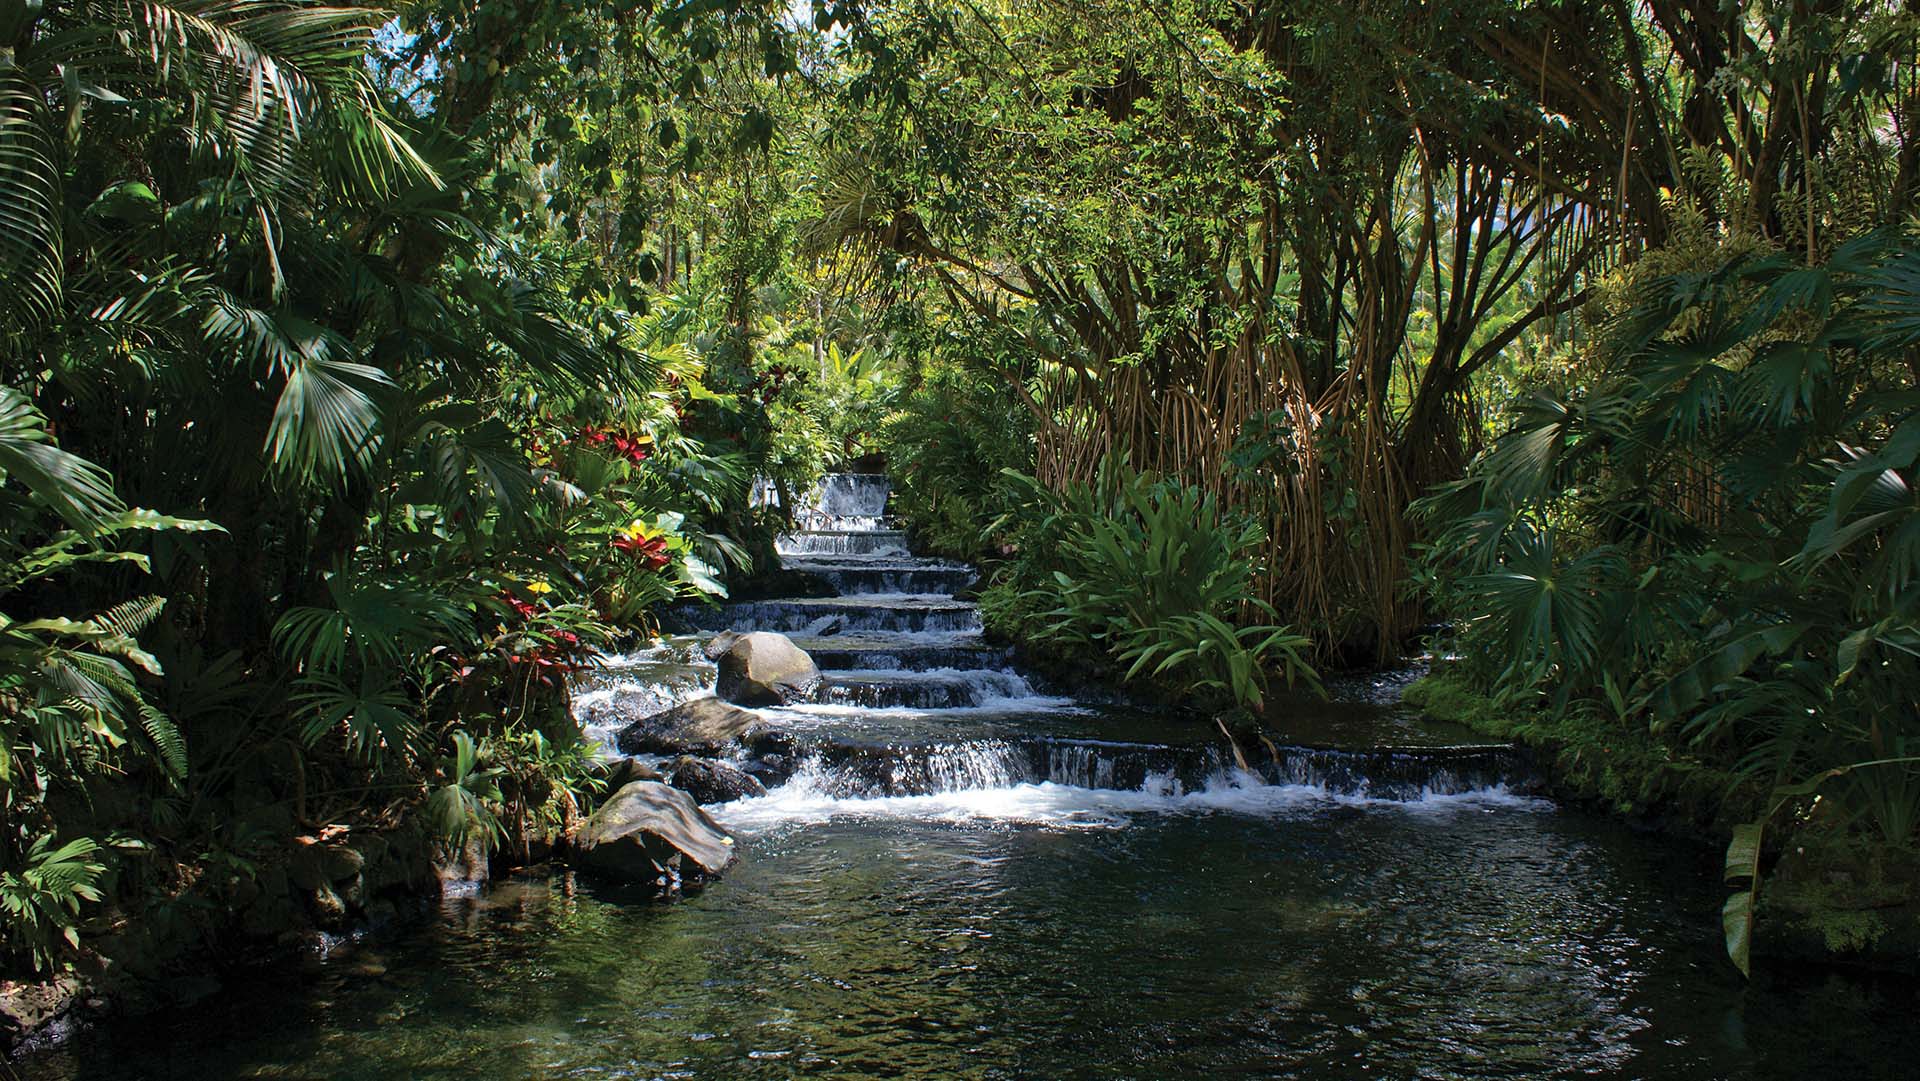 Hot Springs in La Fortuna, Costa Rica near Arenal Volcano